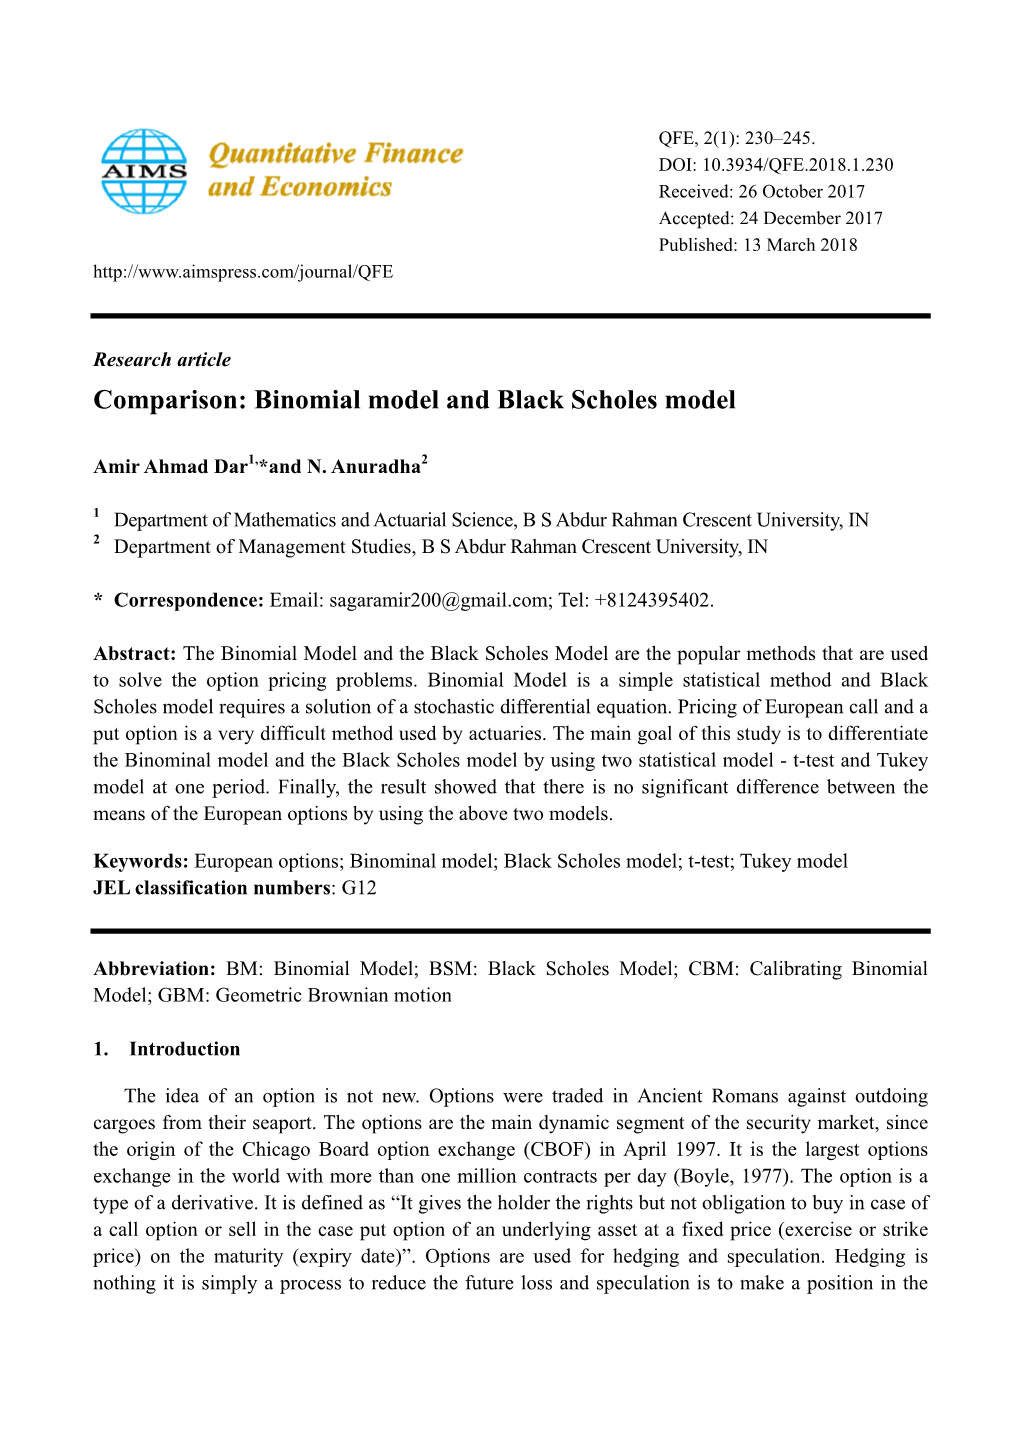 Comparison: Binomial Model and Black Scholes Model